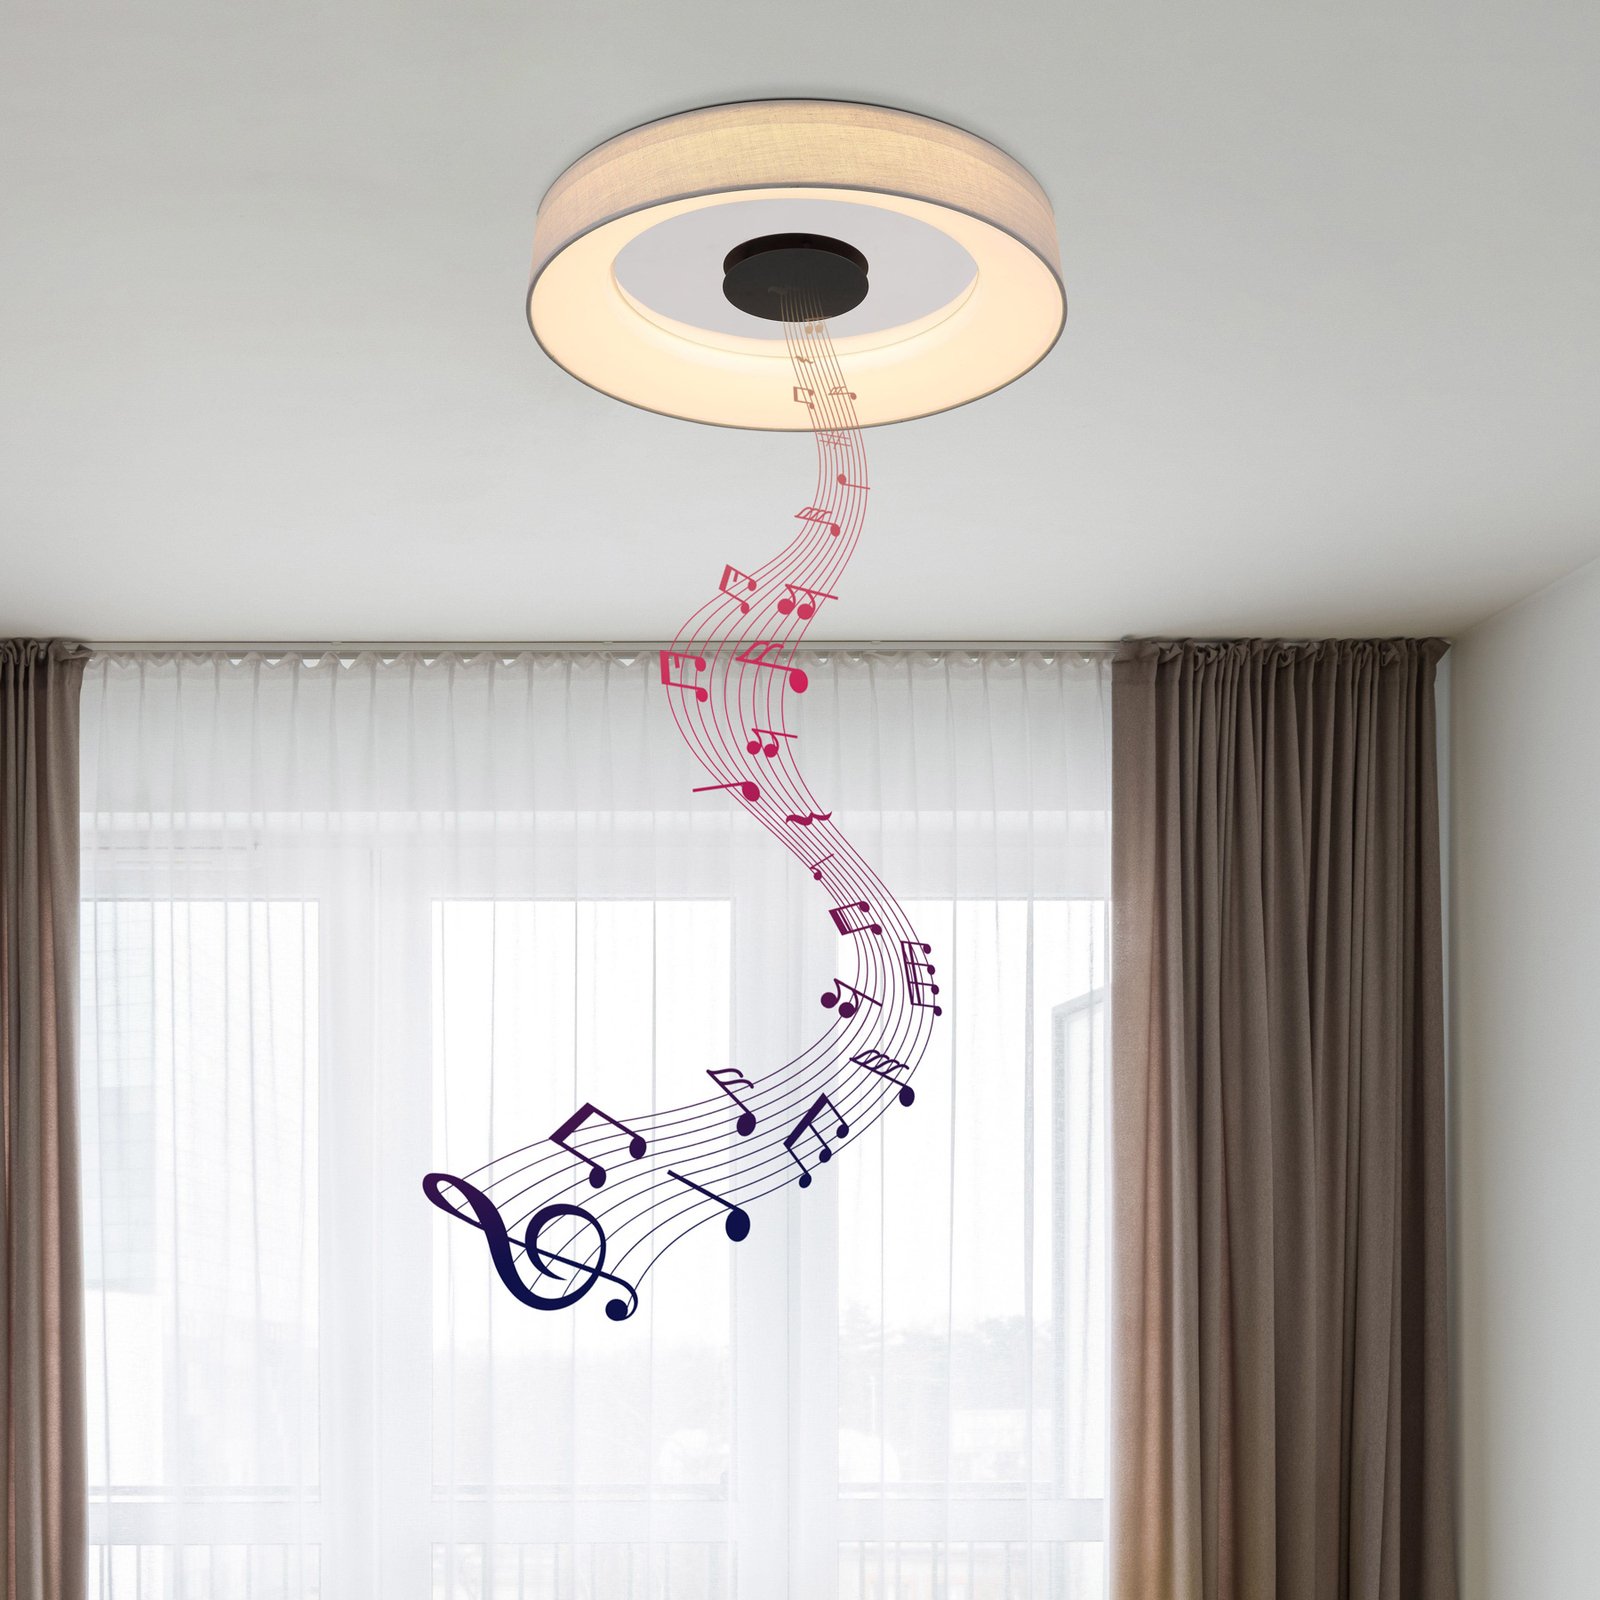 Terpsa smart LED ceiling light, white/grey, Ø 46.8 cm, fabric